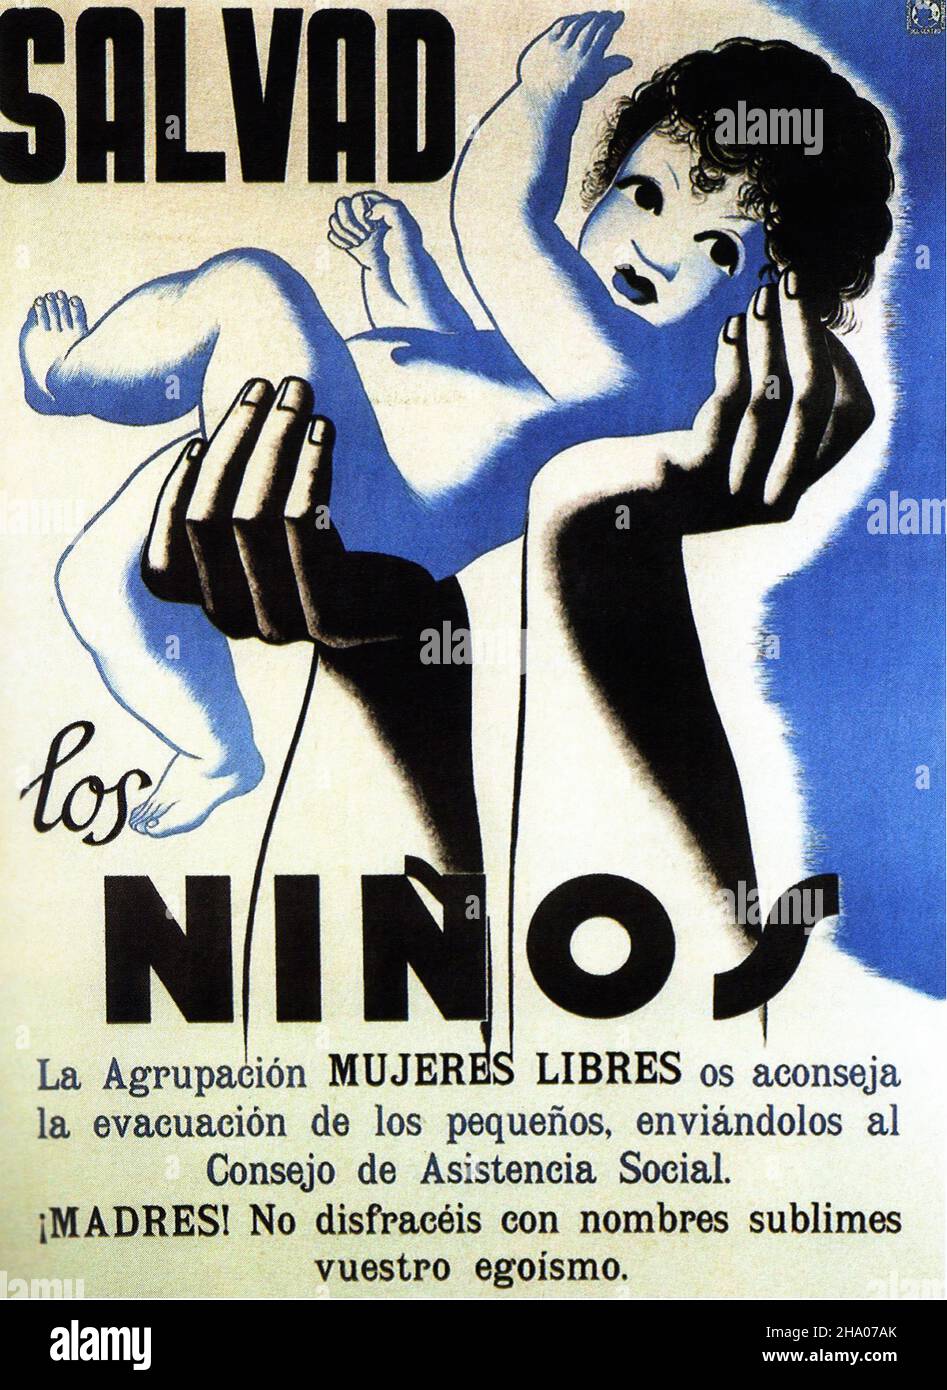 1937 Salvad los Ninos - affiche de propagande sur la guerre civile espagnole (Guerra civil Española) Banque D'Images